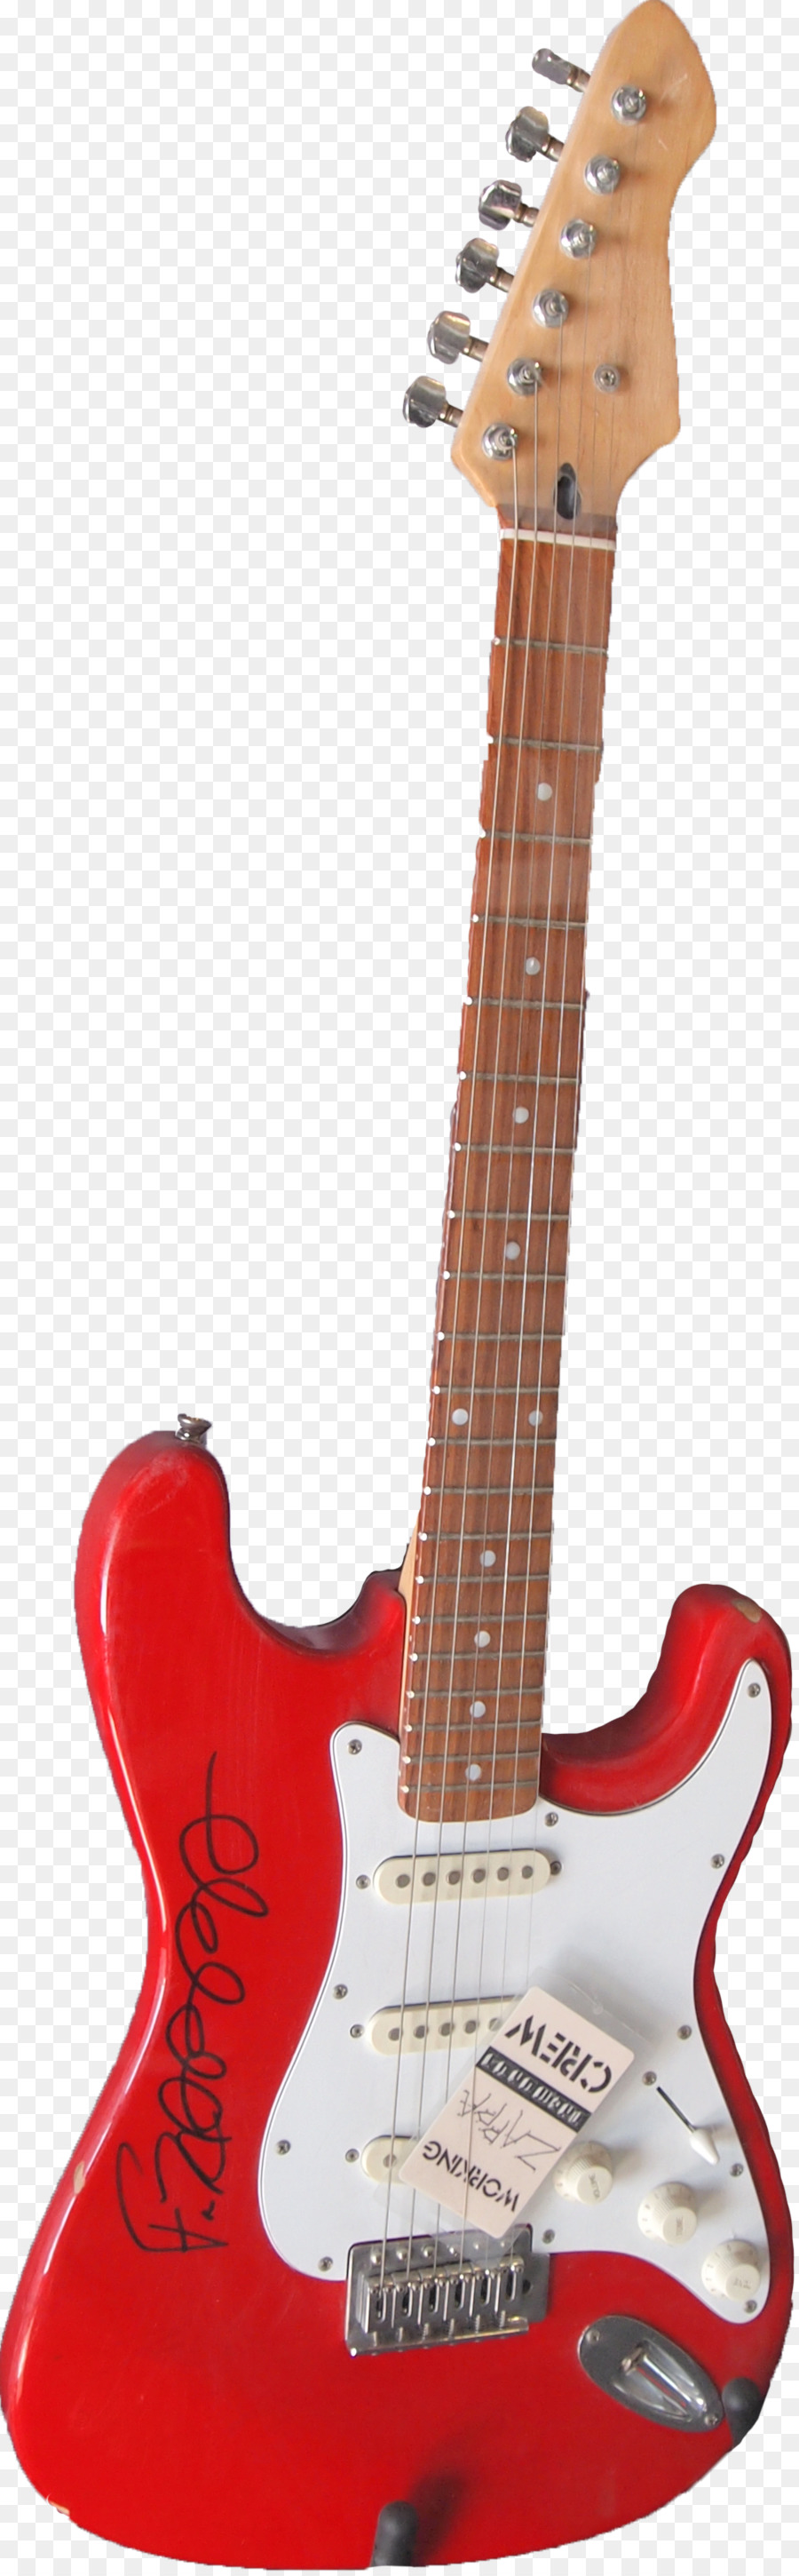 Fender Stratocaster La STRATEGIA del Risonatore chitarra chitarra Elettrica - chitarra